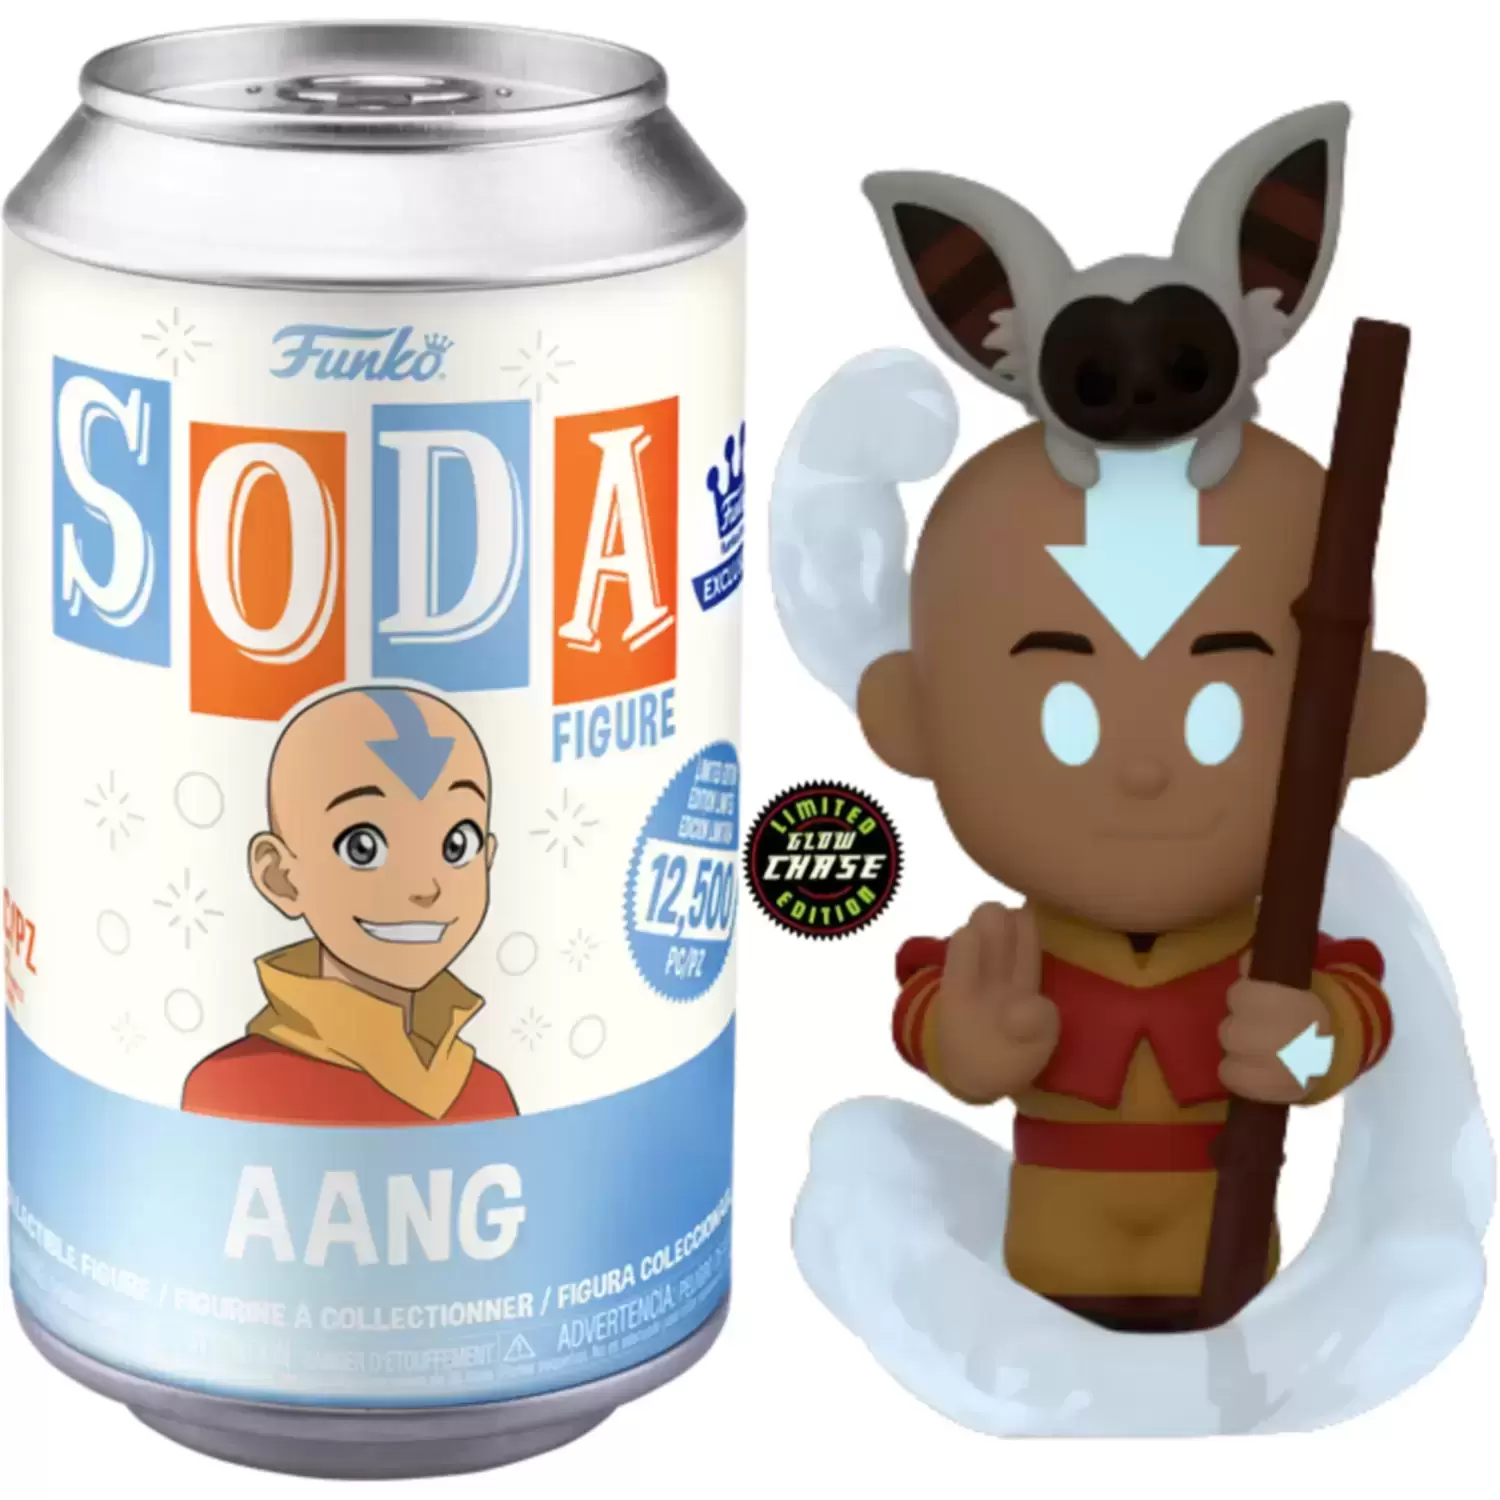 Vinyl Soda! - Avatar The Last Airbender - Aang GITD